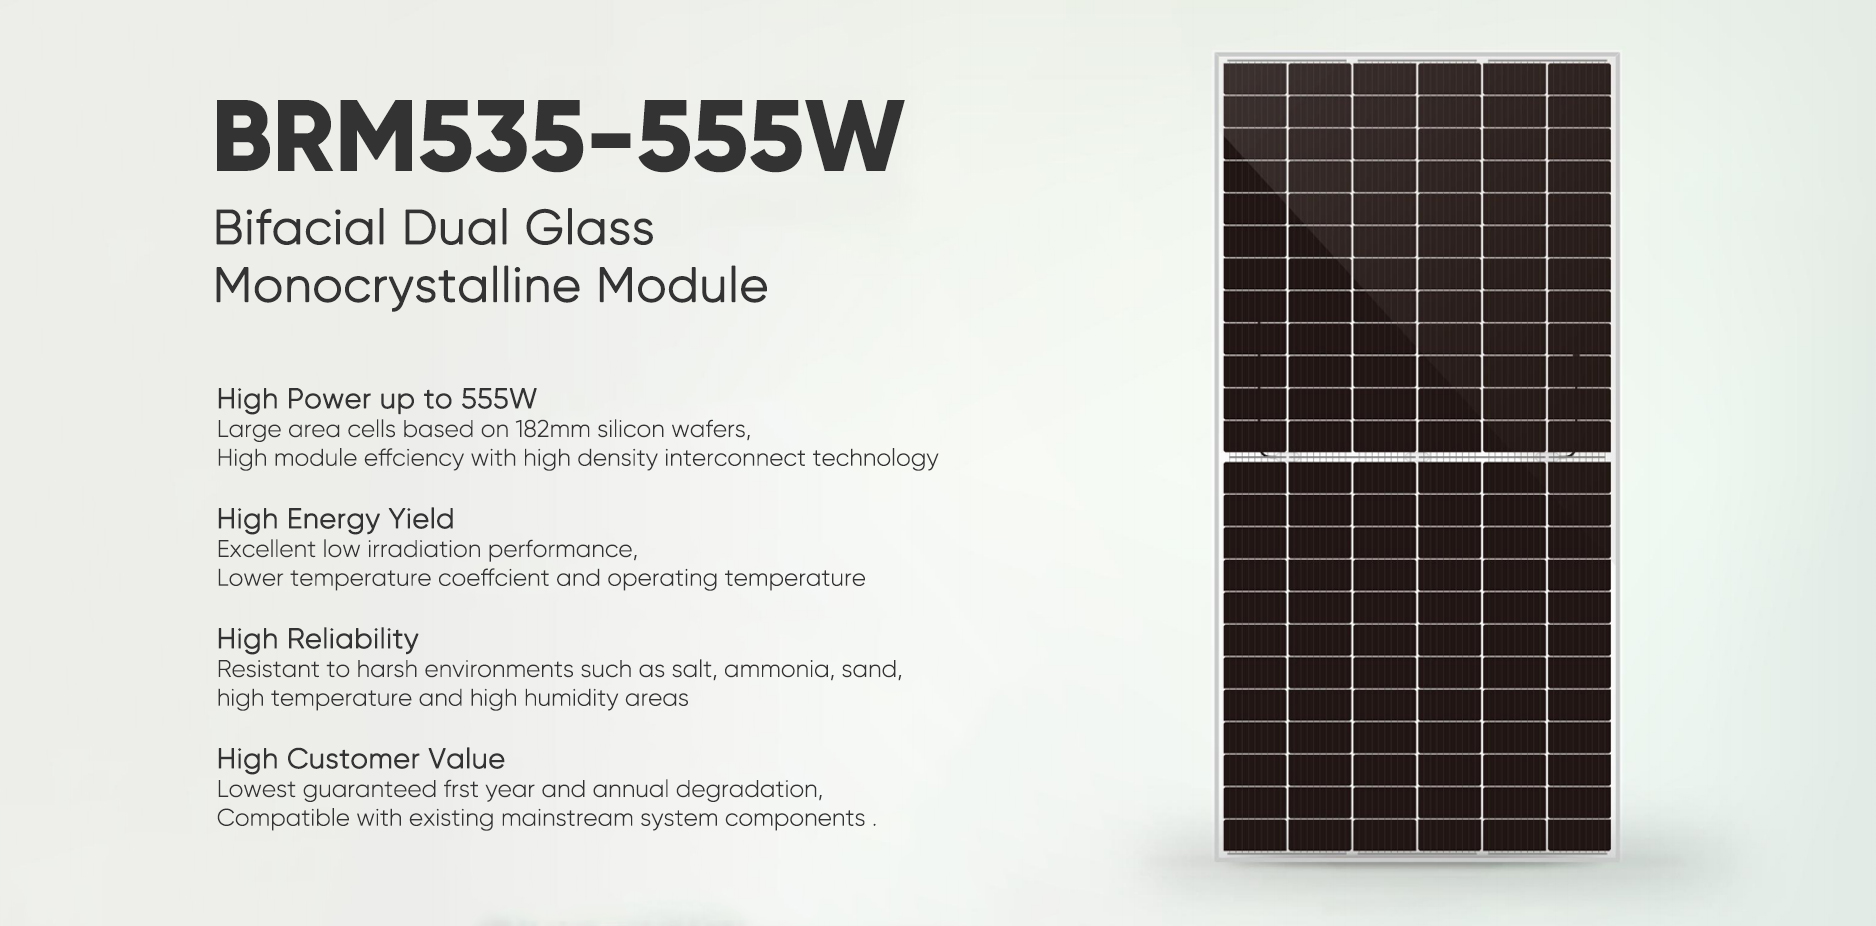 Poster-535W-555W Iphaneli yeSolar eBifacial eDual Glass Monocrystalline imodyuli